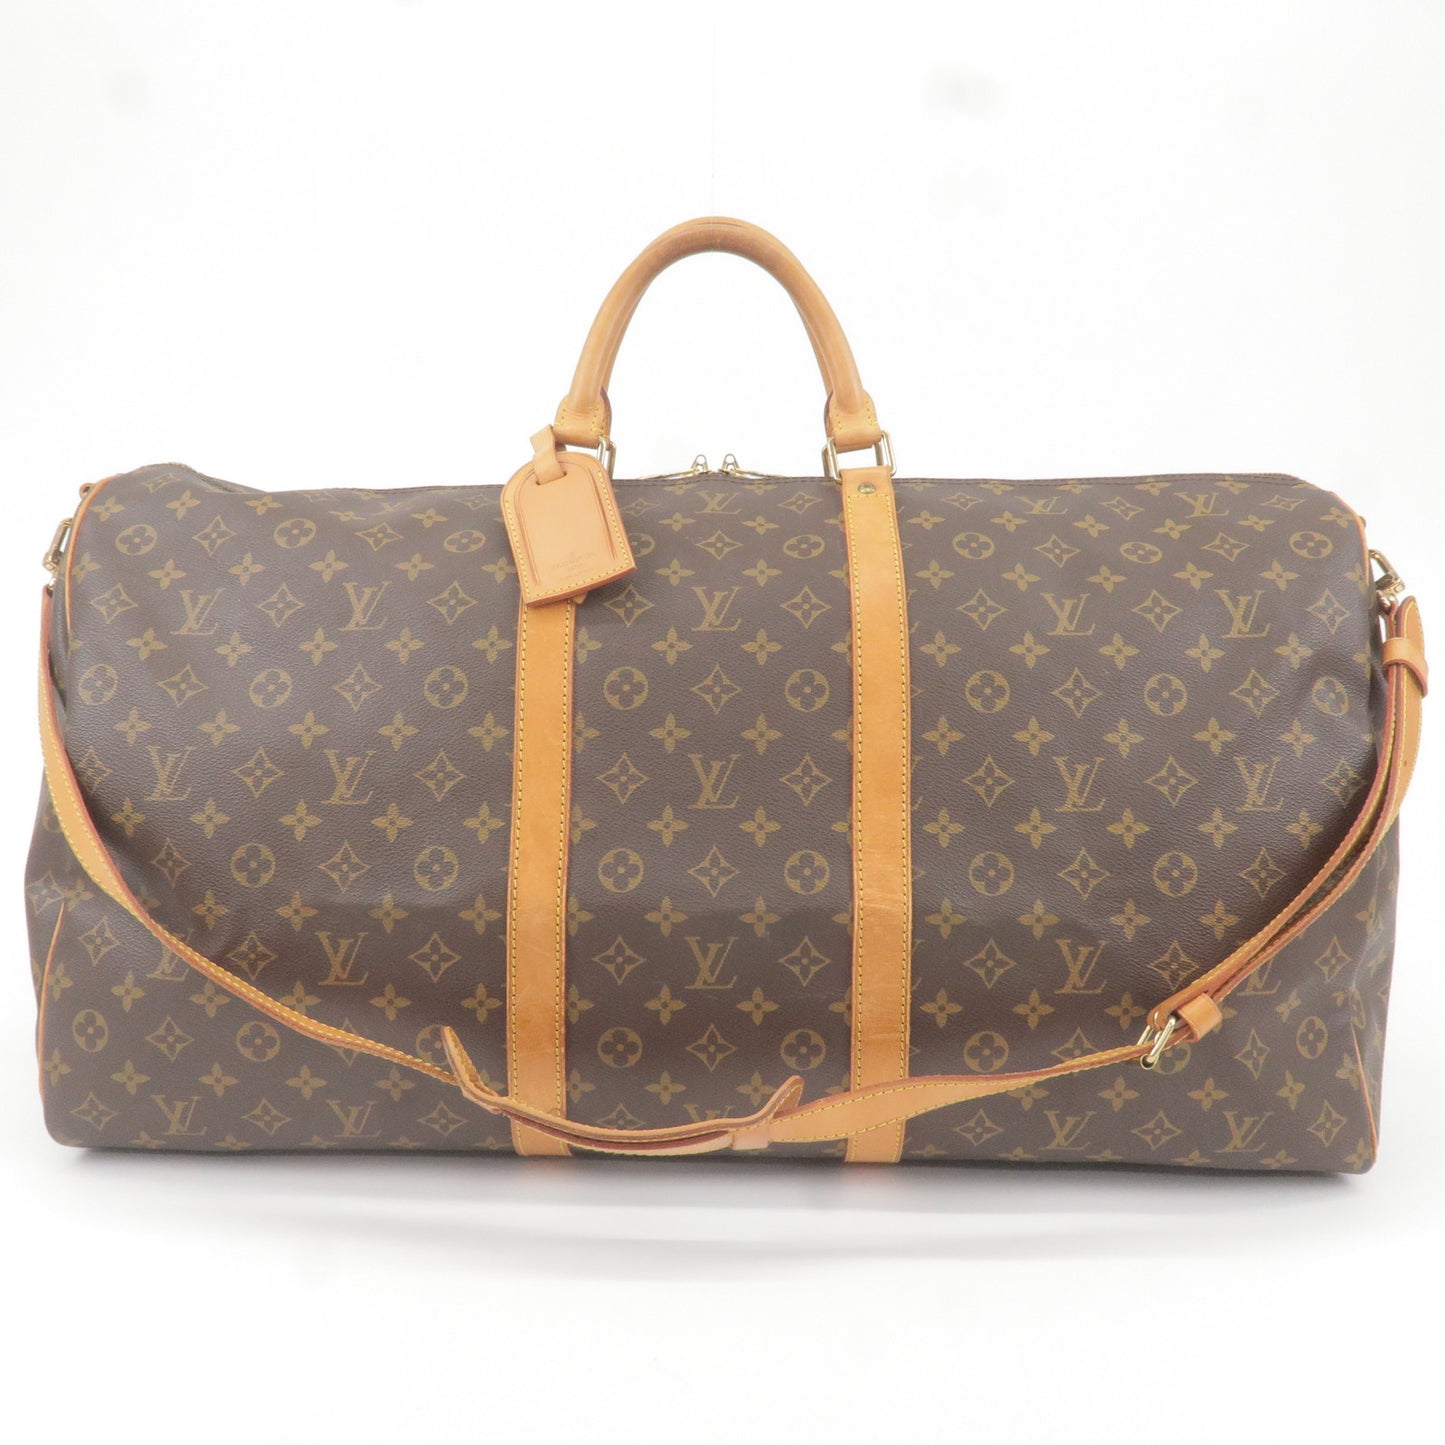 Louis Vuitton Monogram Keepall 60 Large Duffle Travel Bag M41412